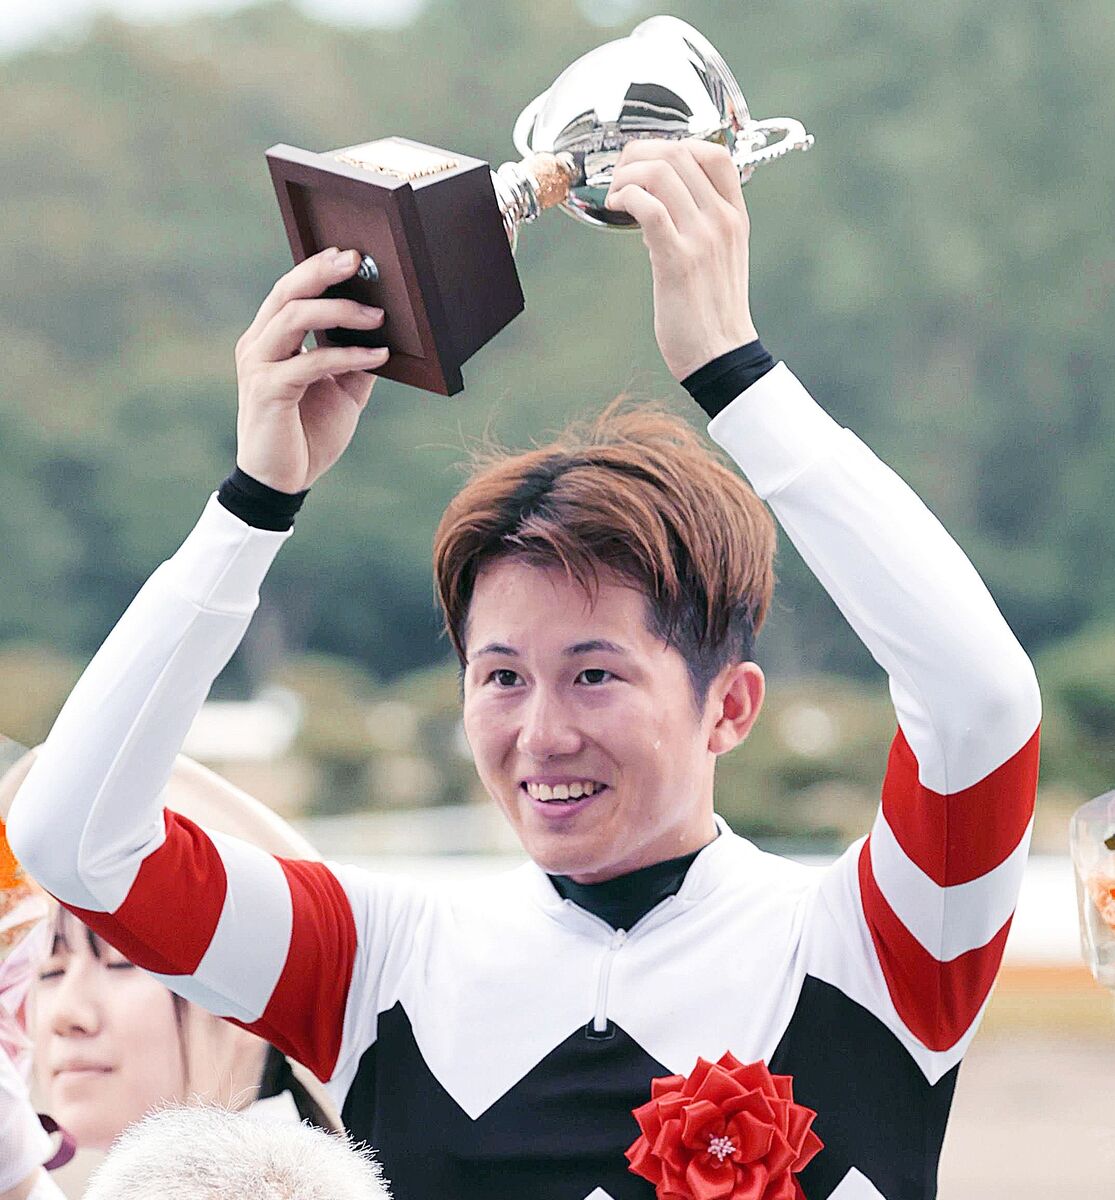 小牧加矢太騎手も総合馬術団体の銅メダル獲得を喜ぶ「これからもっと馬術界が盛り上がってくれたら」